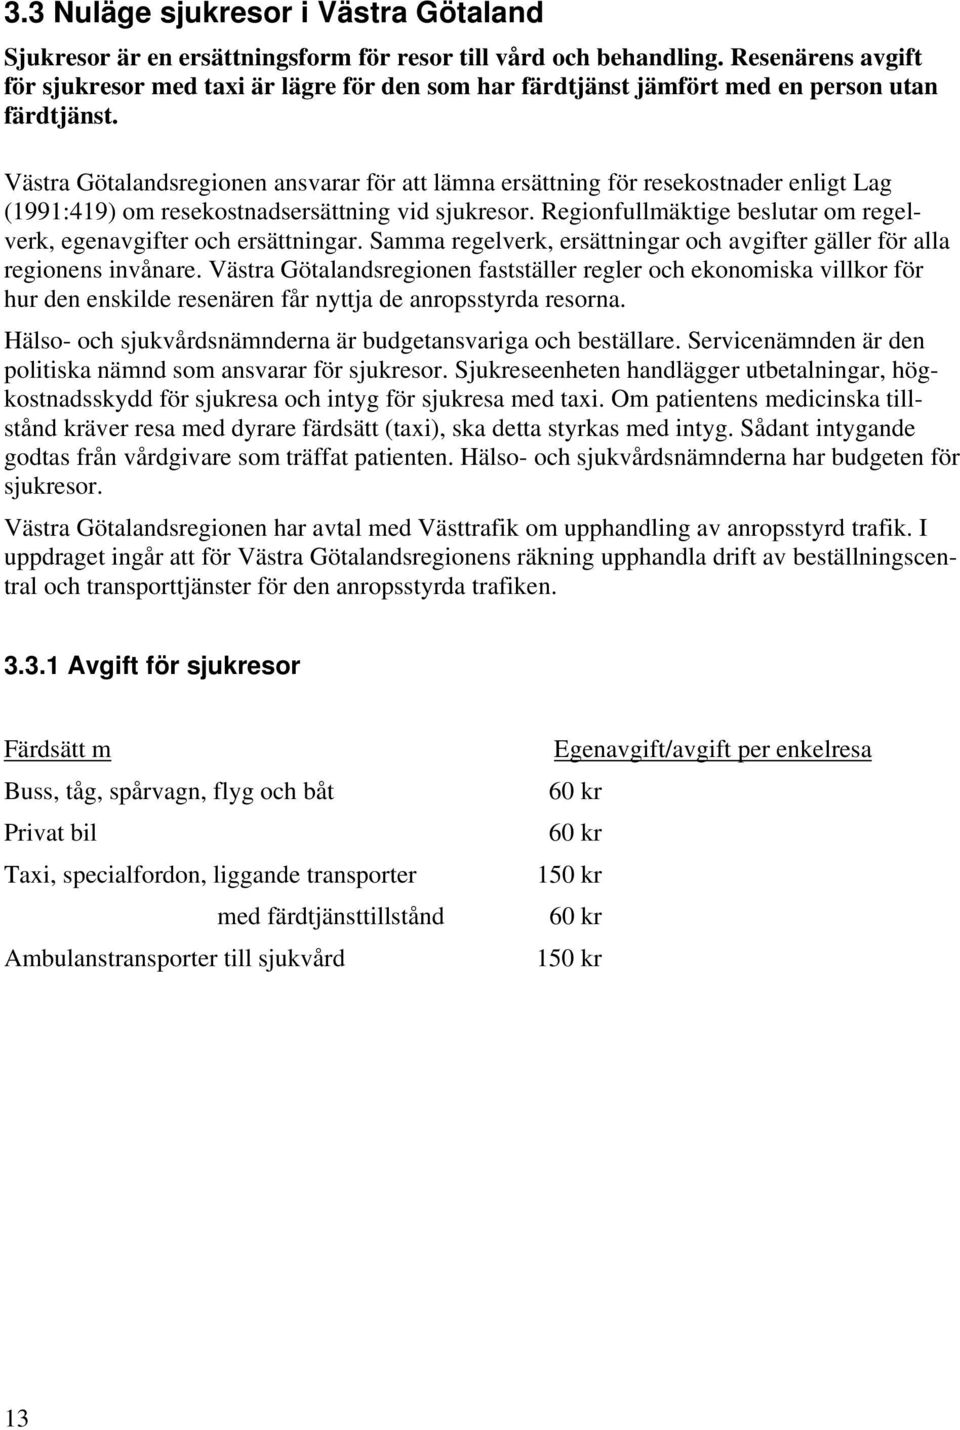 Västra Götalandsregionen ansvarar för att lämna ersättning för resekostnader enligt Lag (1991:419) om resekostnadsersättning vid sjukresor.